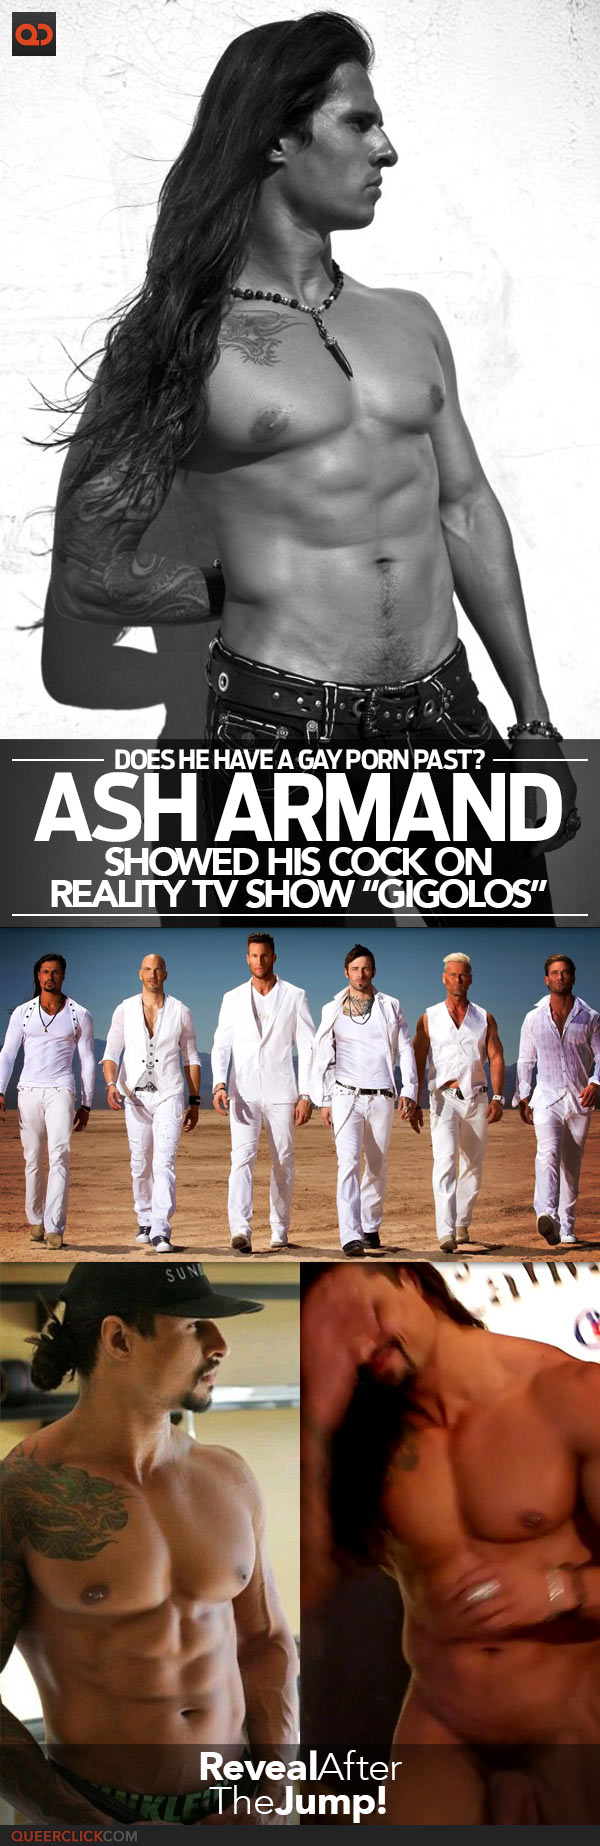 qc-ash_armand_showed_his_cock_on_gigolos-teaser